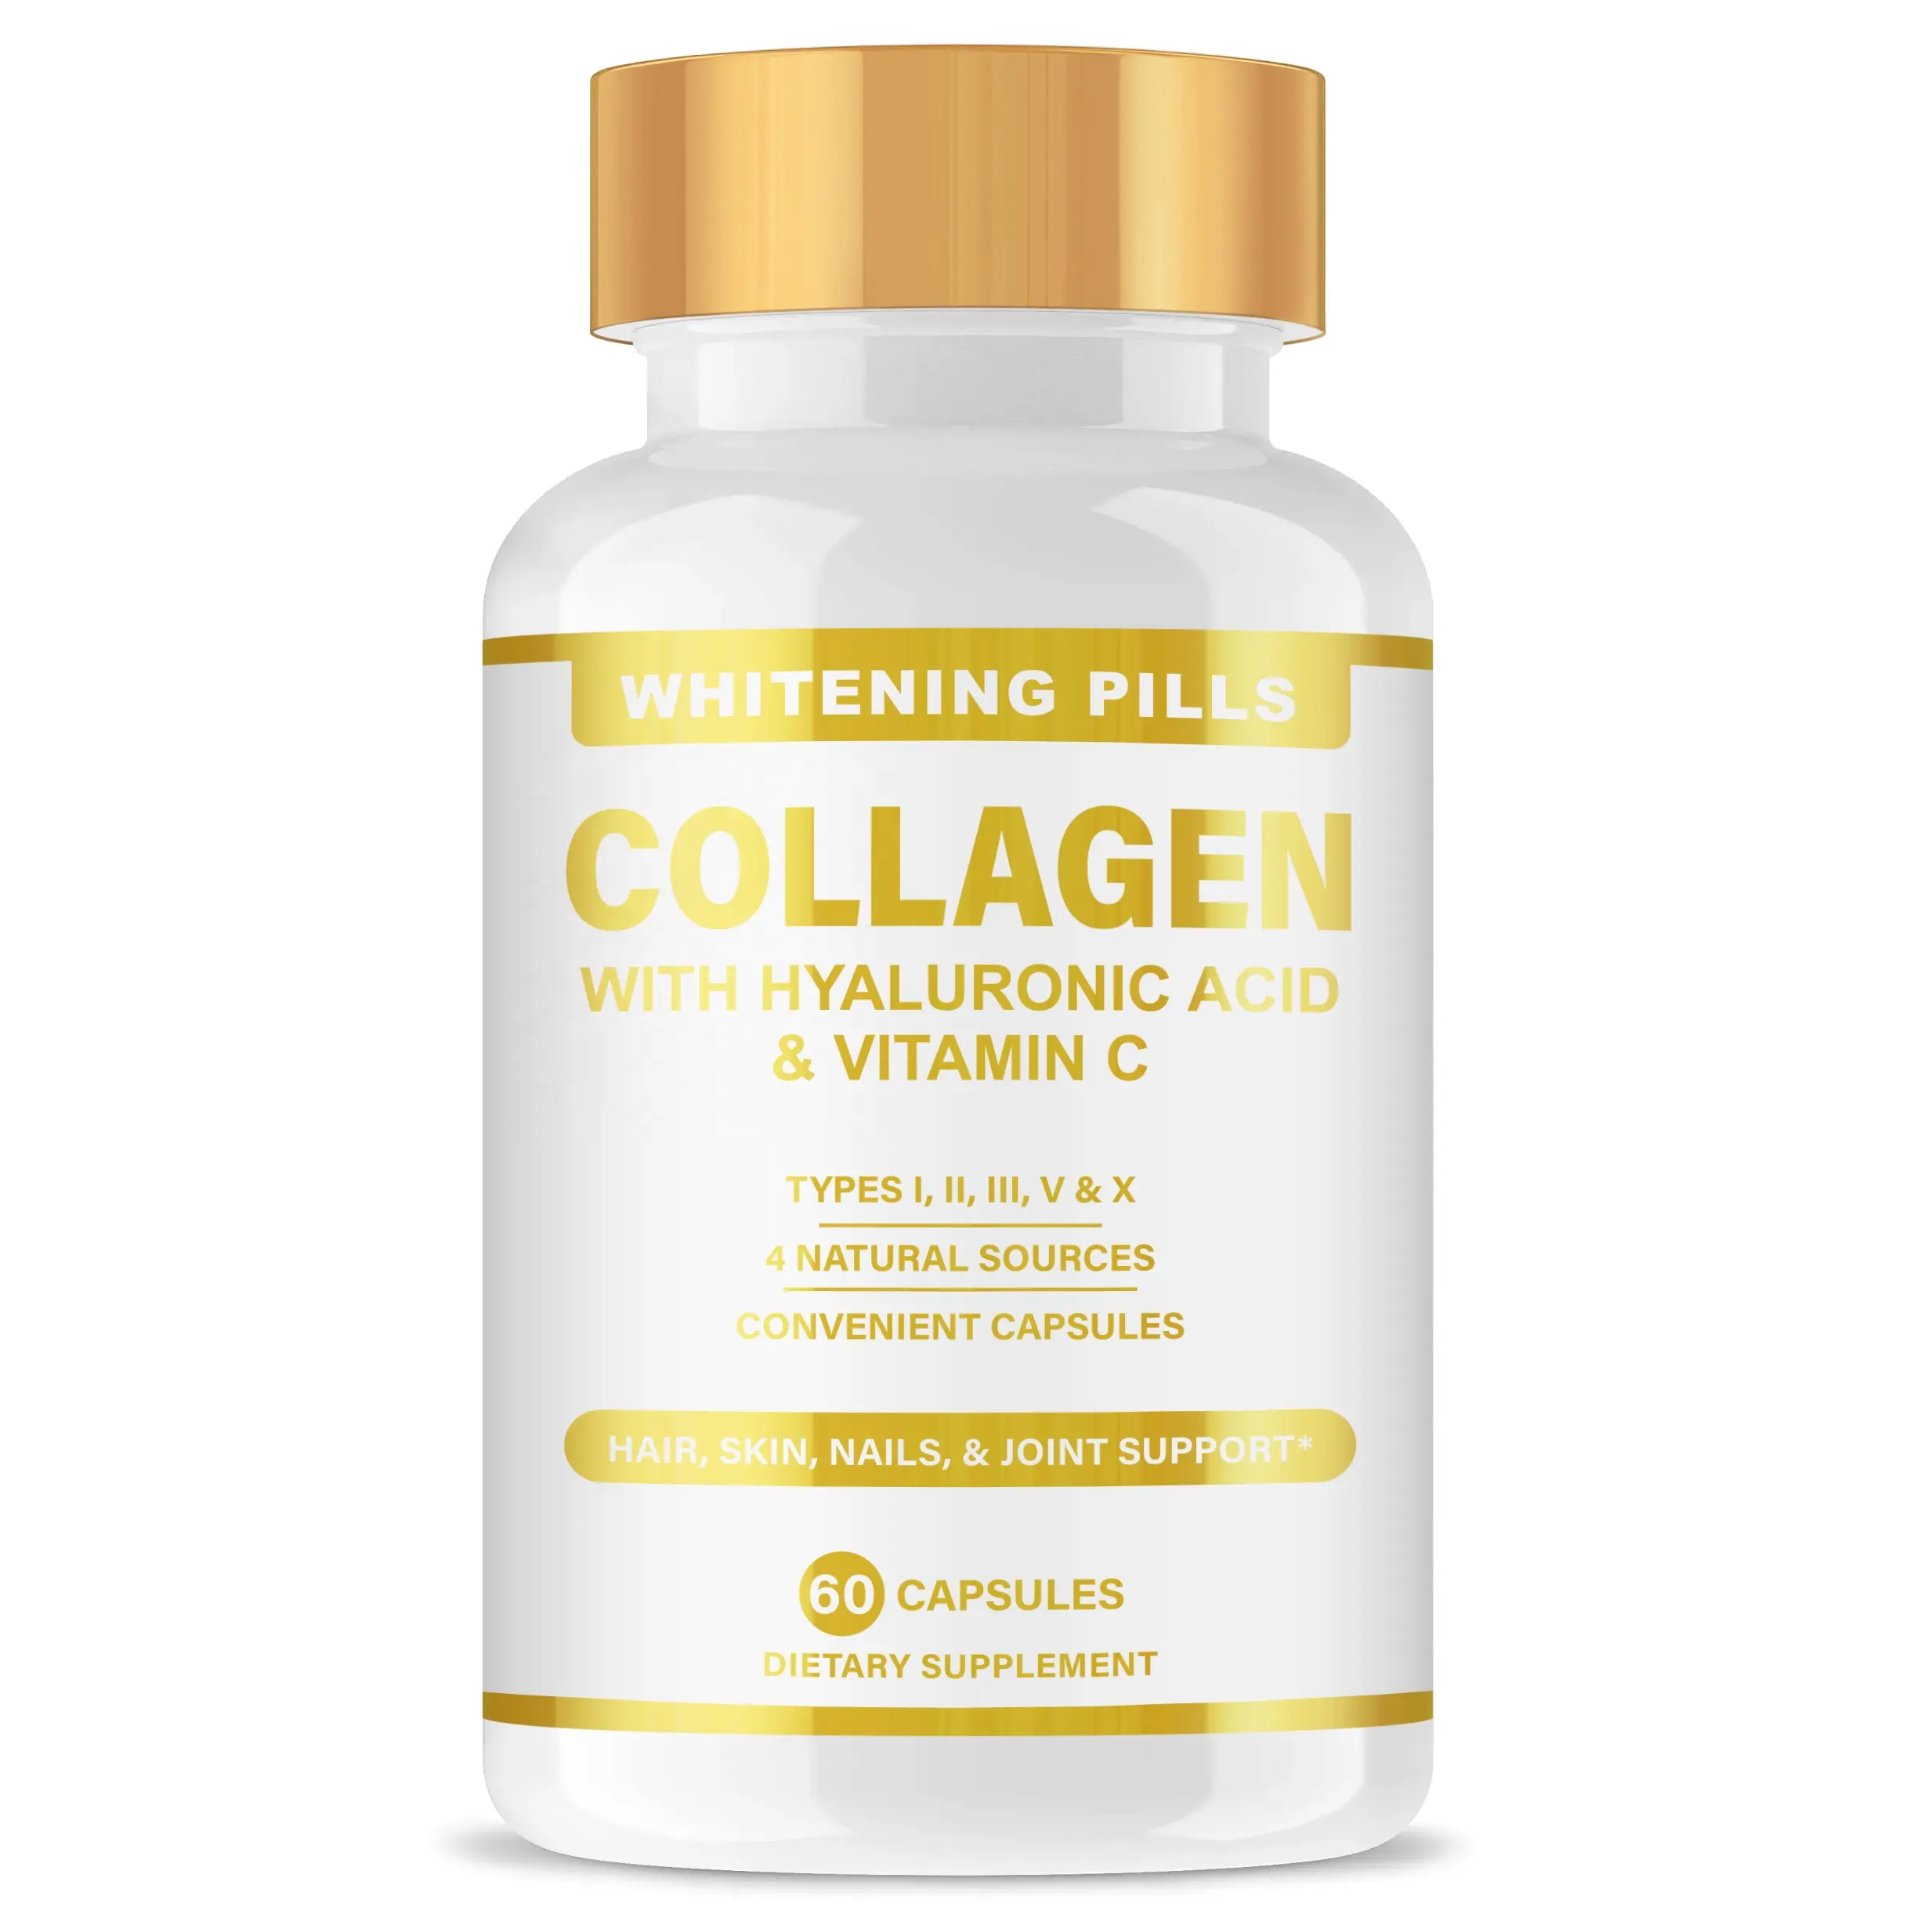 Oem collagen protein viên nang với vitamin C nhãn hiệu riêng Collagen bổ sung cho chăm sóc da làm trắng viên nang